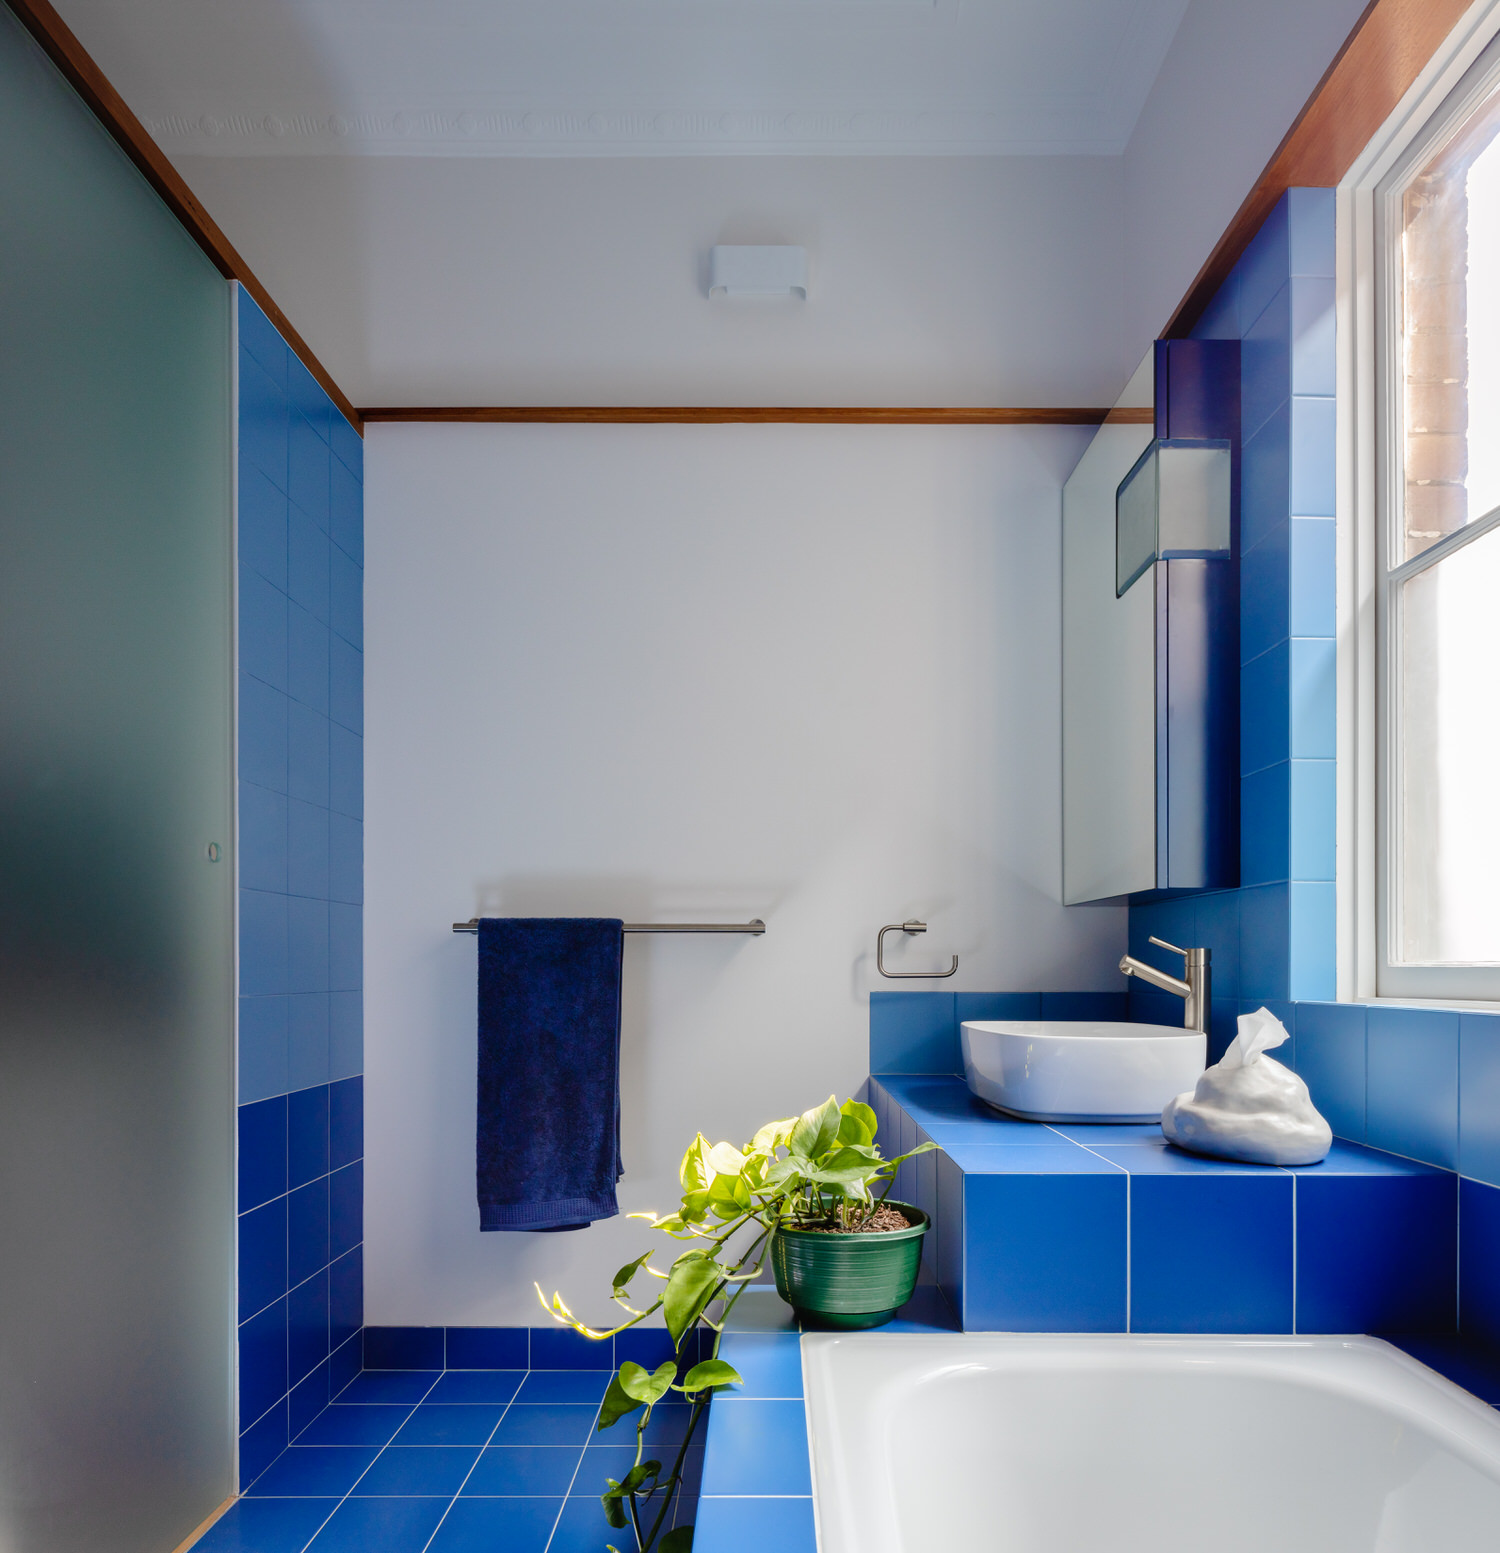 Phòng tắm với những chi tiết màu xanh lam đậm như sơn tường, gạch ốp lát, bồn rửa mặt, khăn tắm,... tạo sự nổi bật trên phông nền trắng chủ đạo.